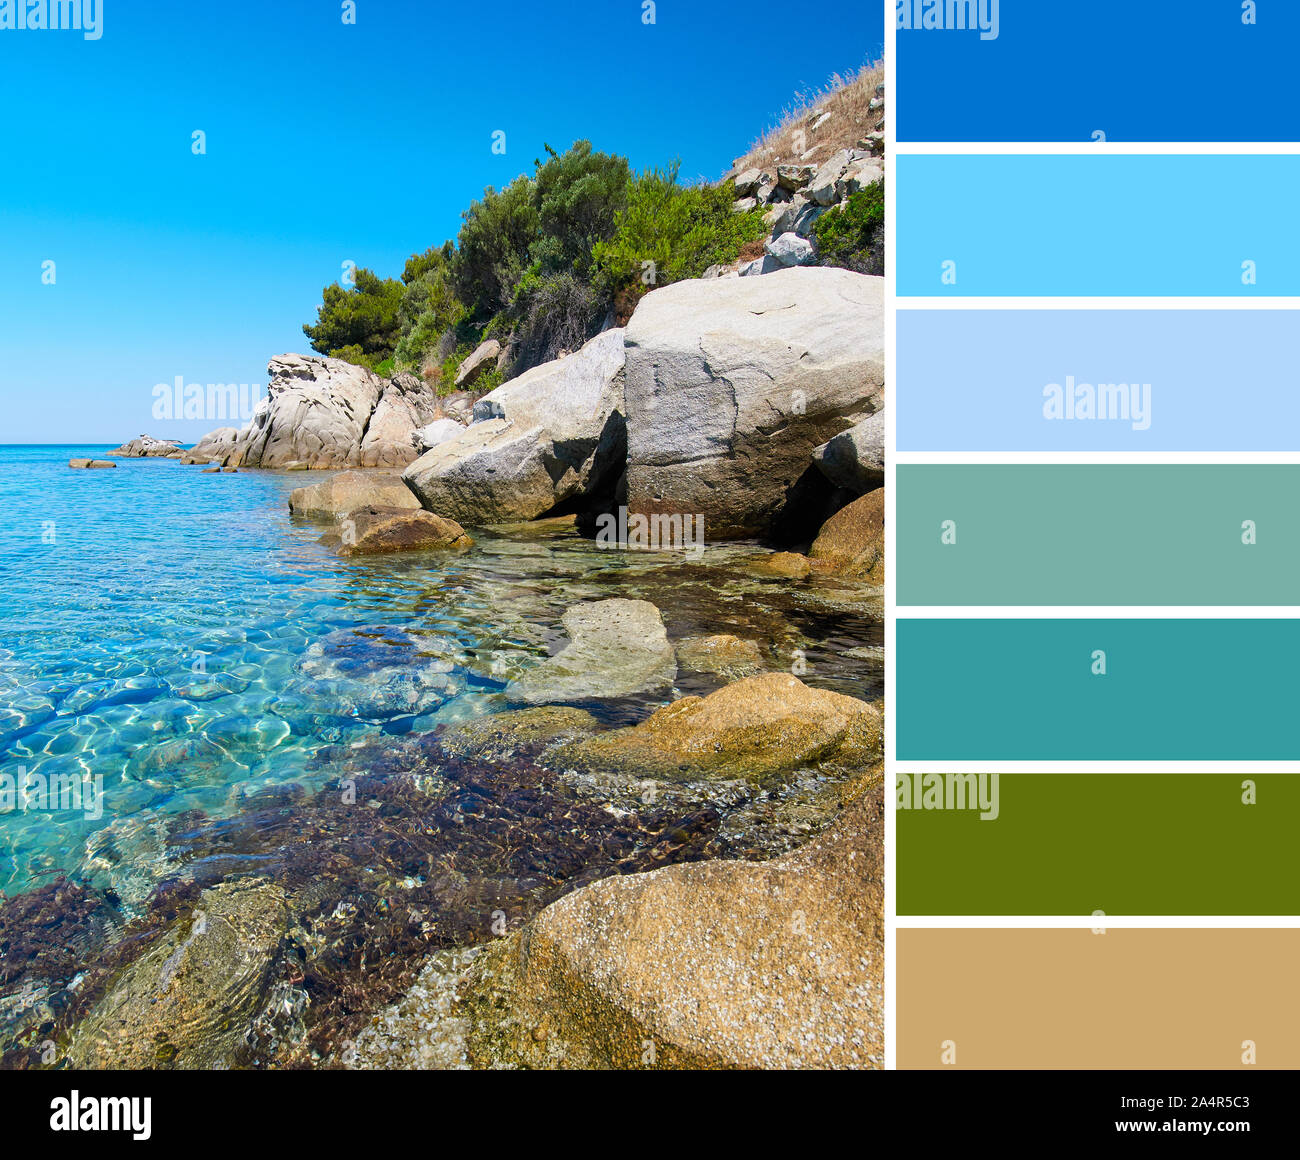 Palette des couleurs d'une photo de la romantique côte de Mer de la péninsule de Sithonia, Halkidiki, Grèce du Nord Banque D'Images